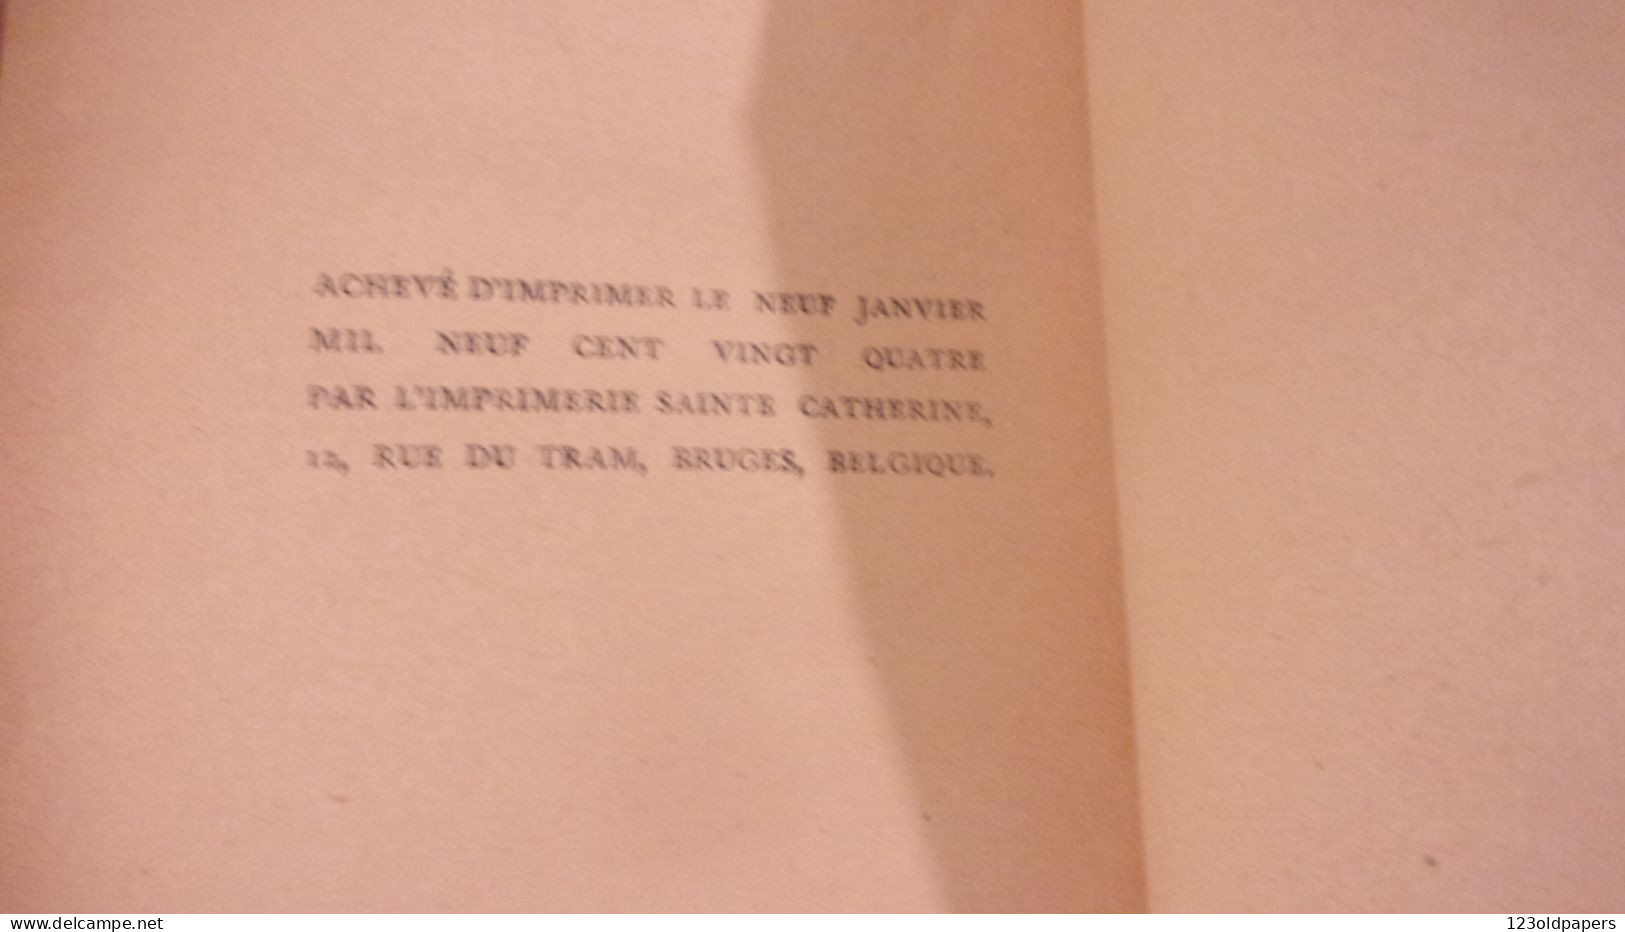 Corydon, GIDE (André), Edité par P., NRF 1924,  BELLE RELIURE GAY INTEREST